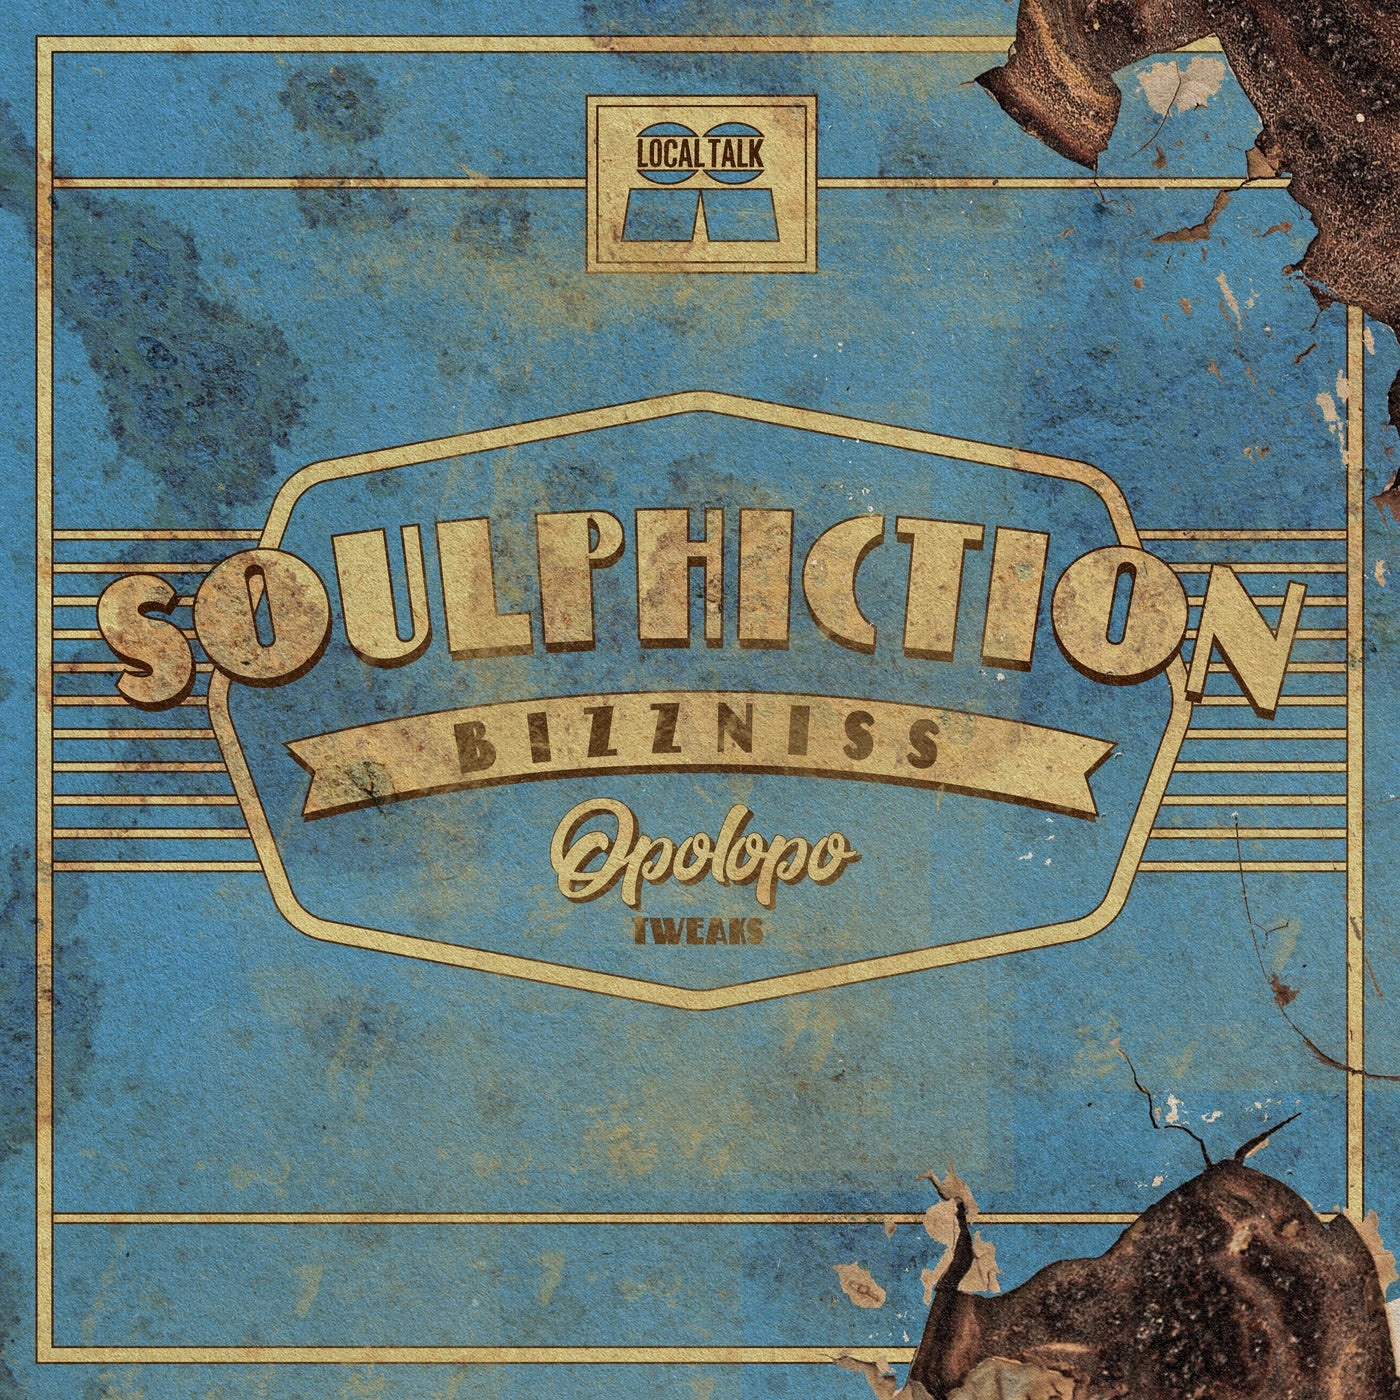 Soulphiction - Bizzness (OPOLOPO Tweak) [OTW2]